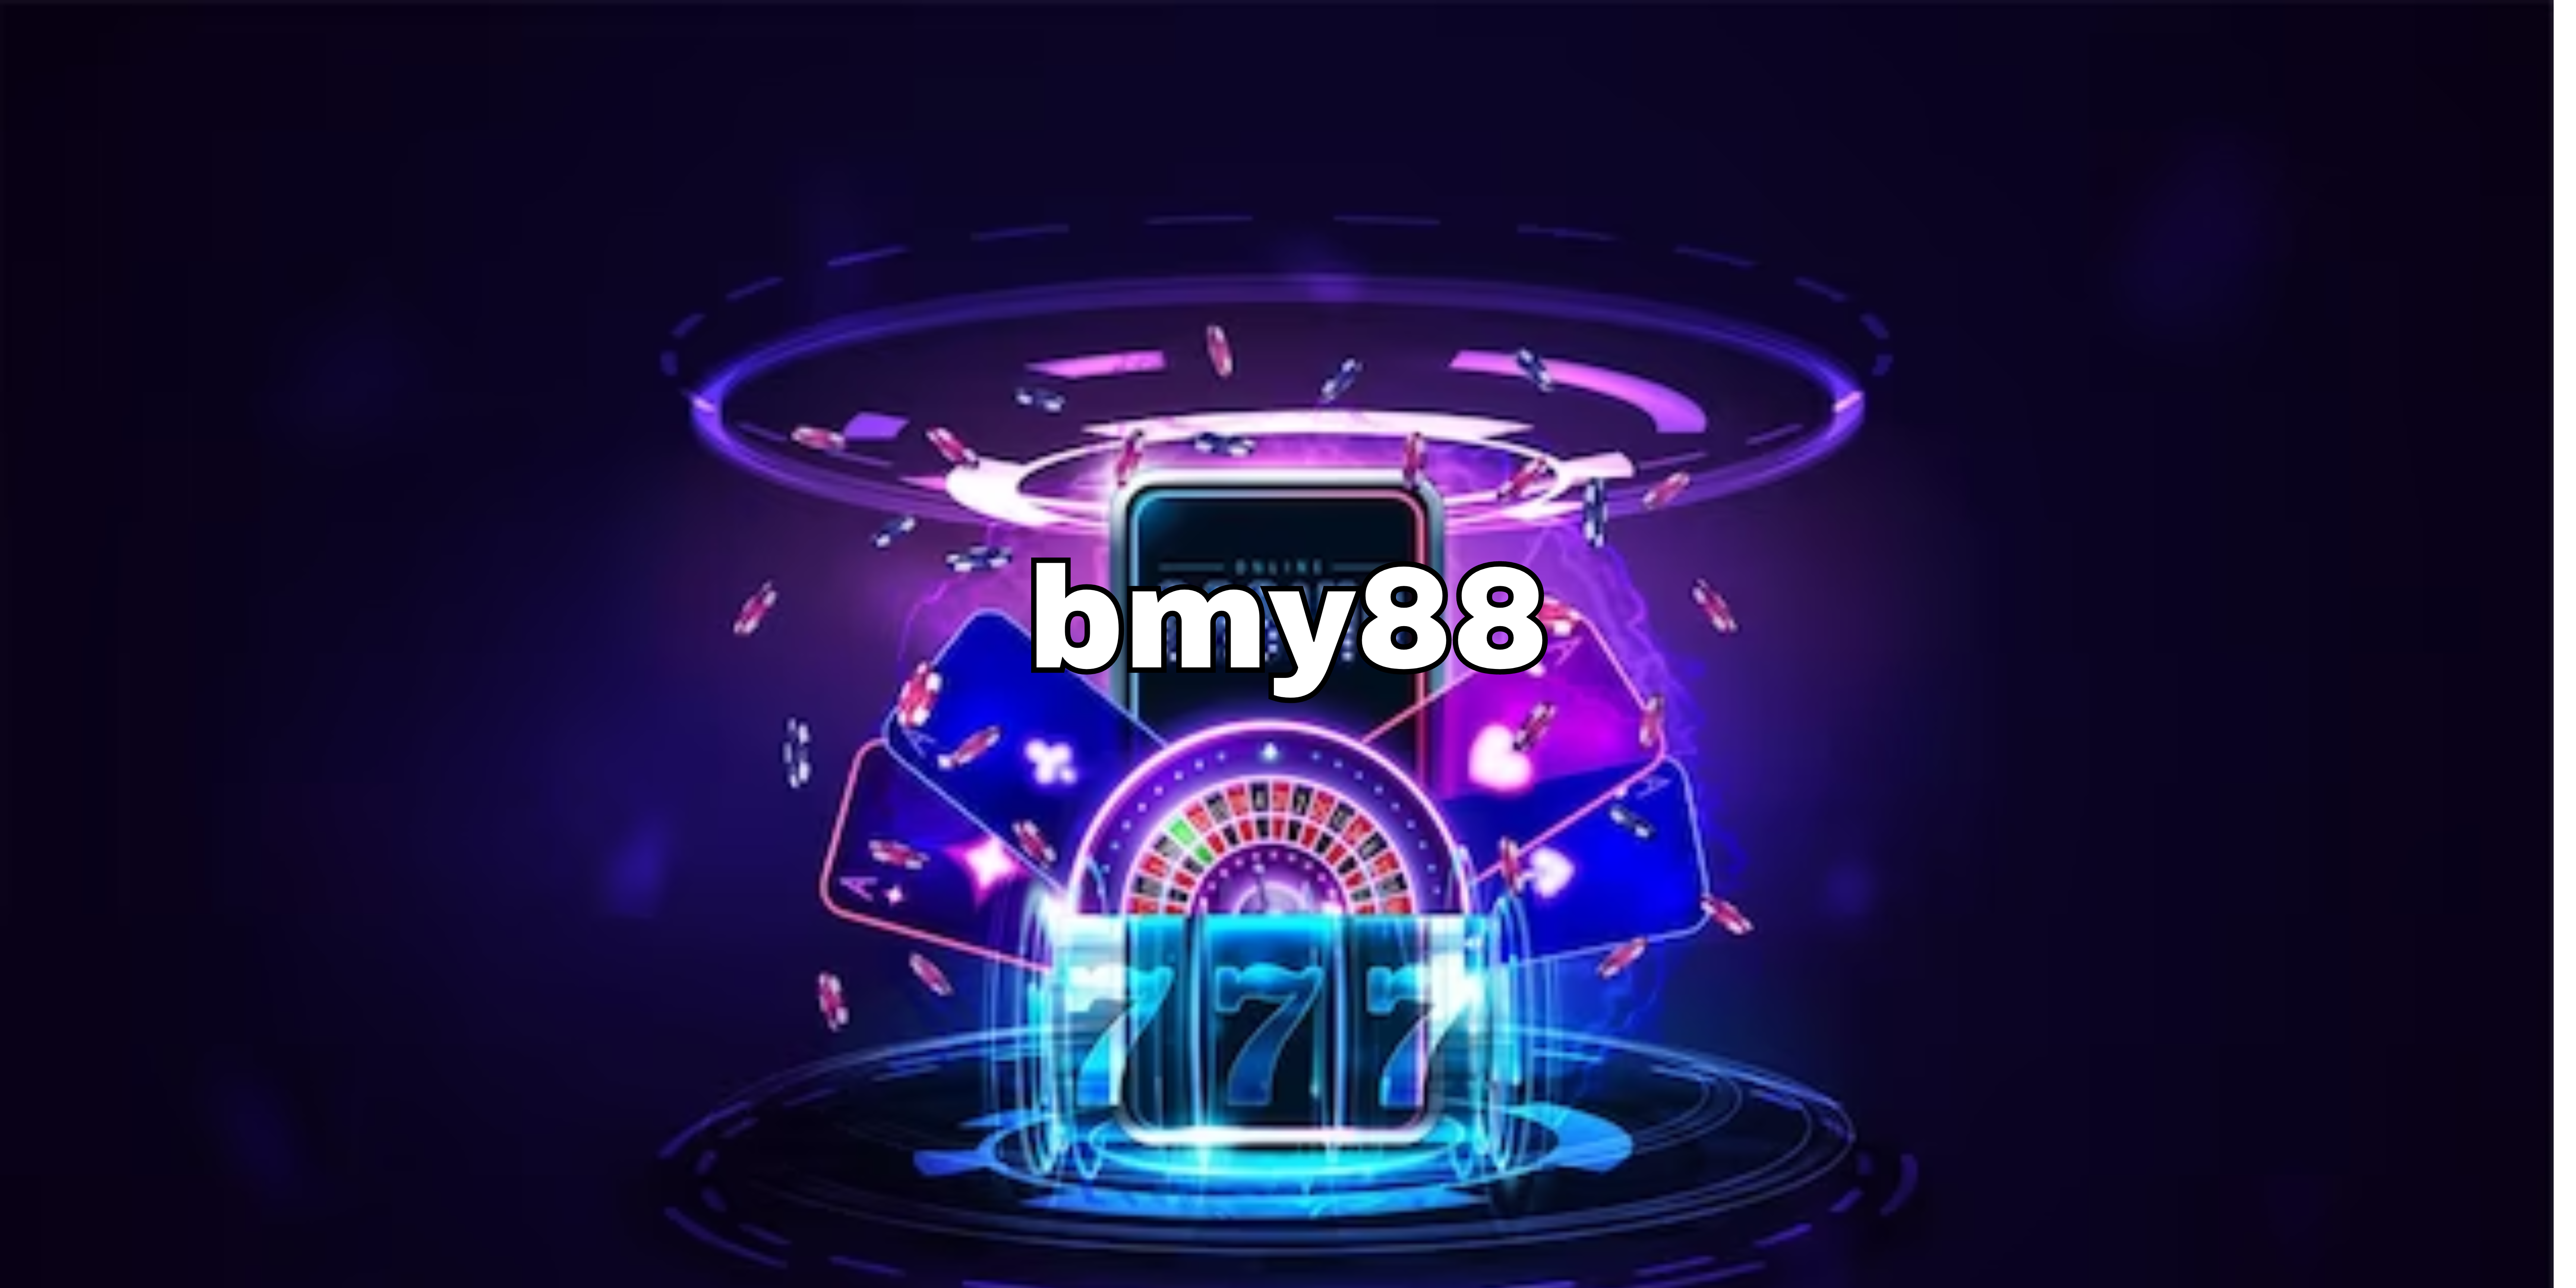 bmy88